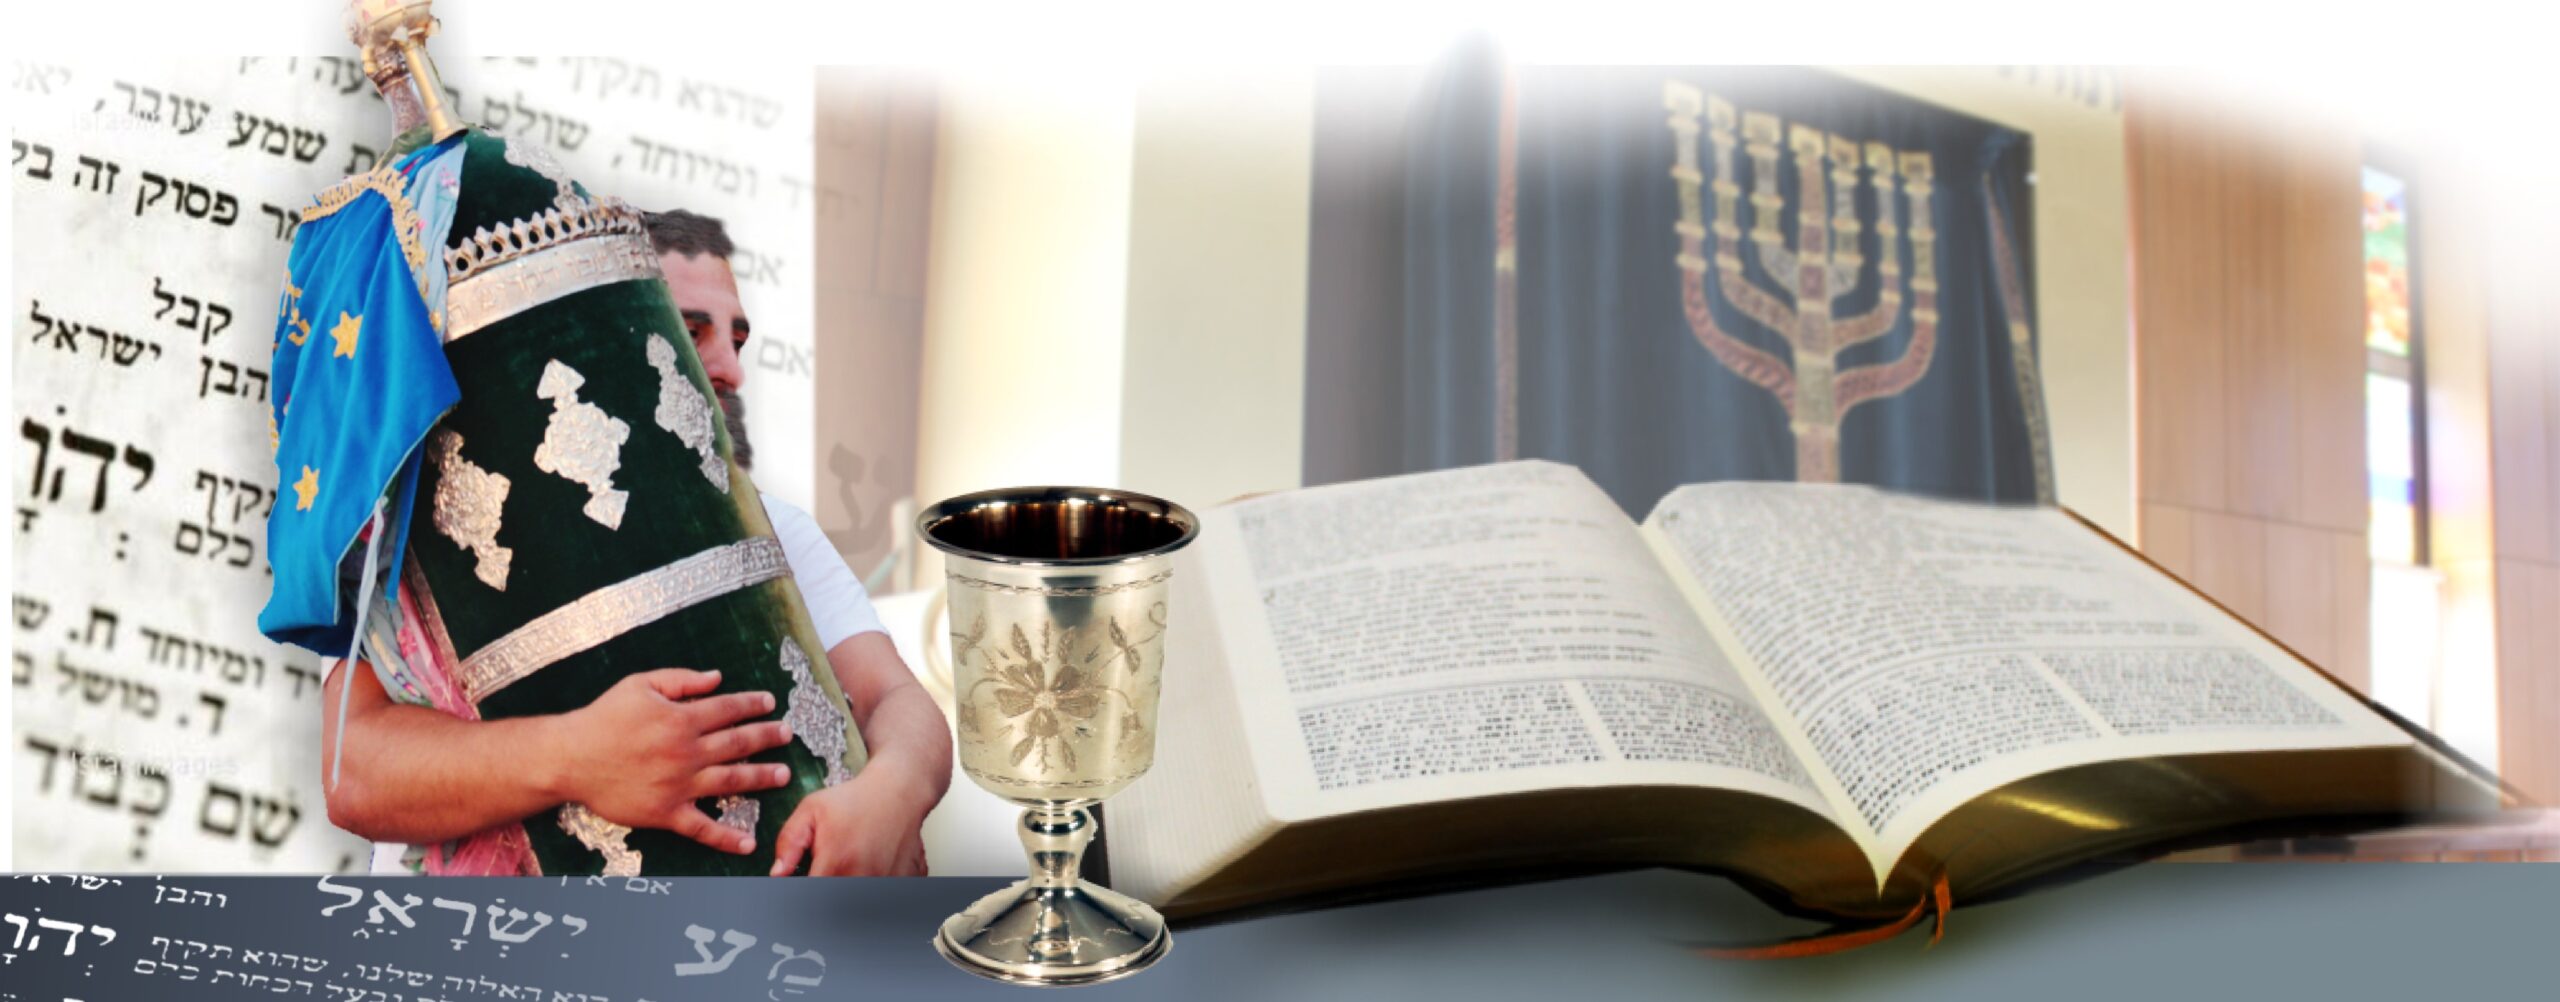 Developing a Messianic Liturgy